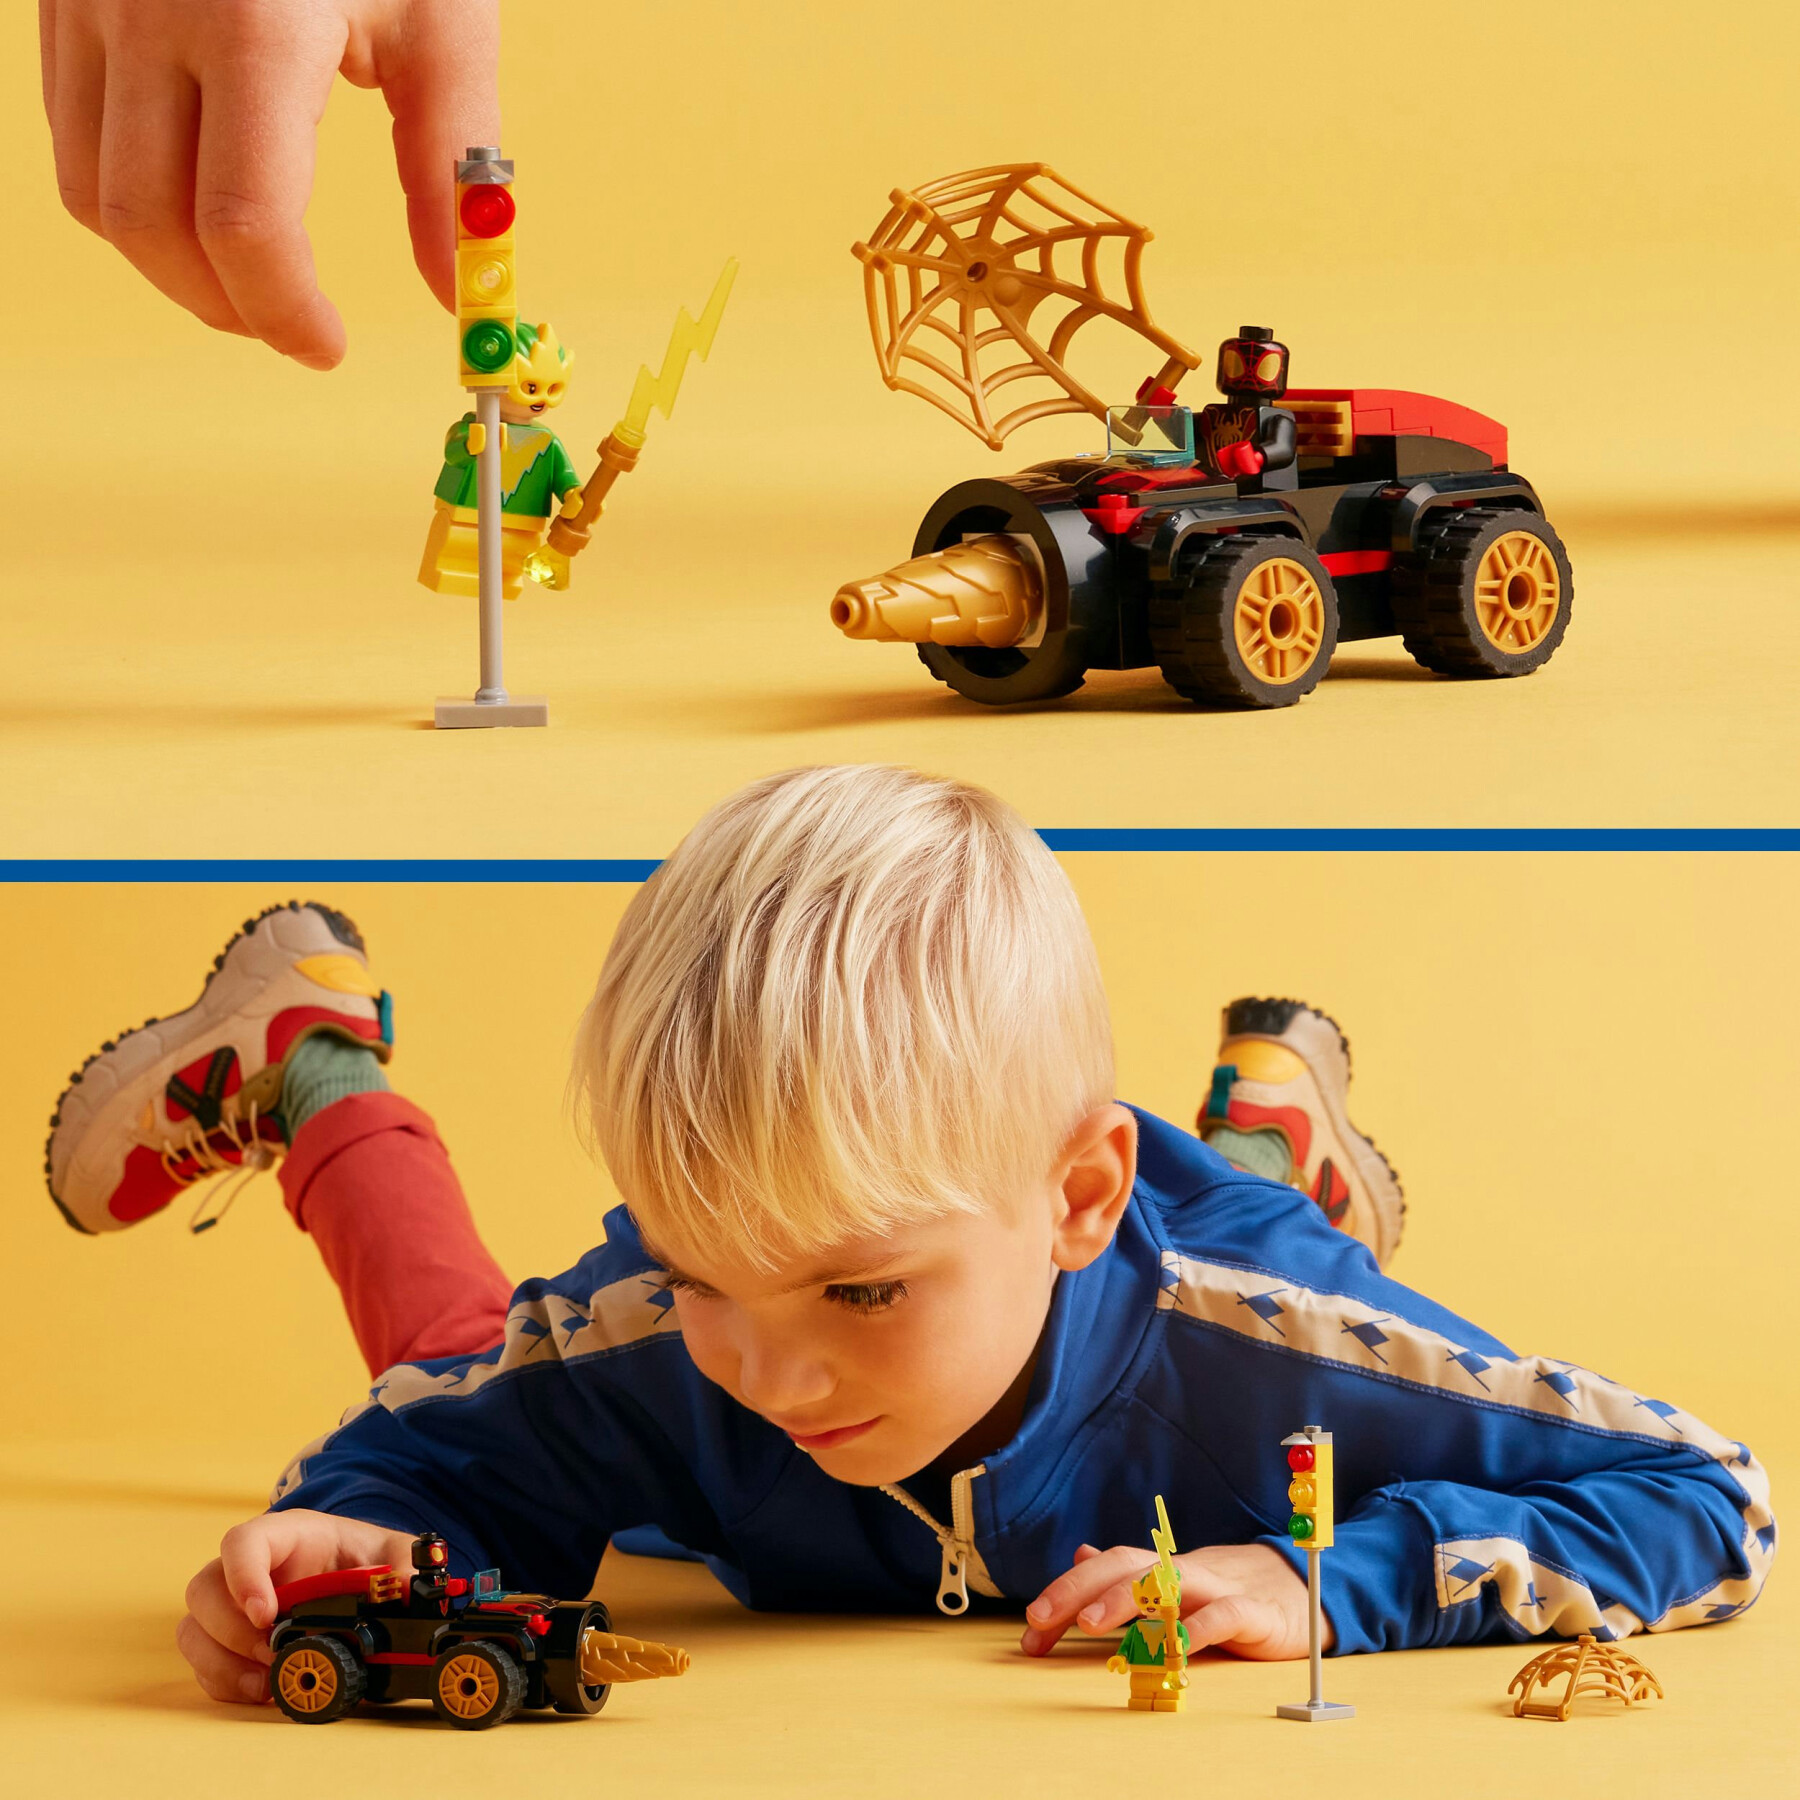 Lego spidey e i suoi fantastici amici 10792 veicolo trivella di spider-man, gioco bambini 4+, macchina giocattolo e 2 supereroi - LEGO SPIDERMAN, SPIDEY